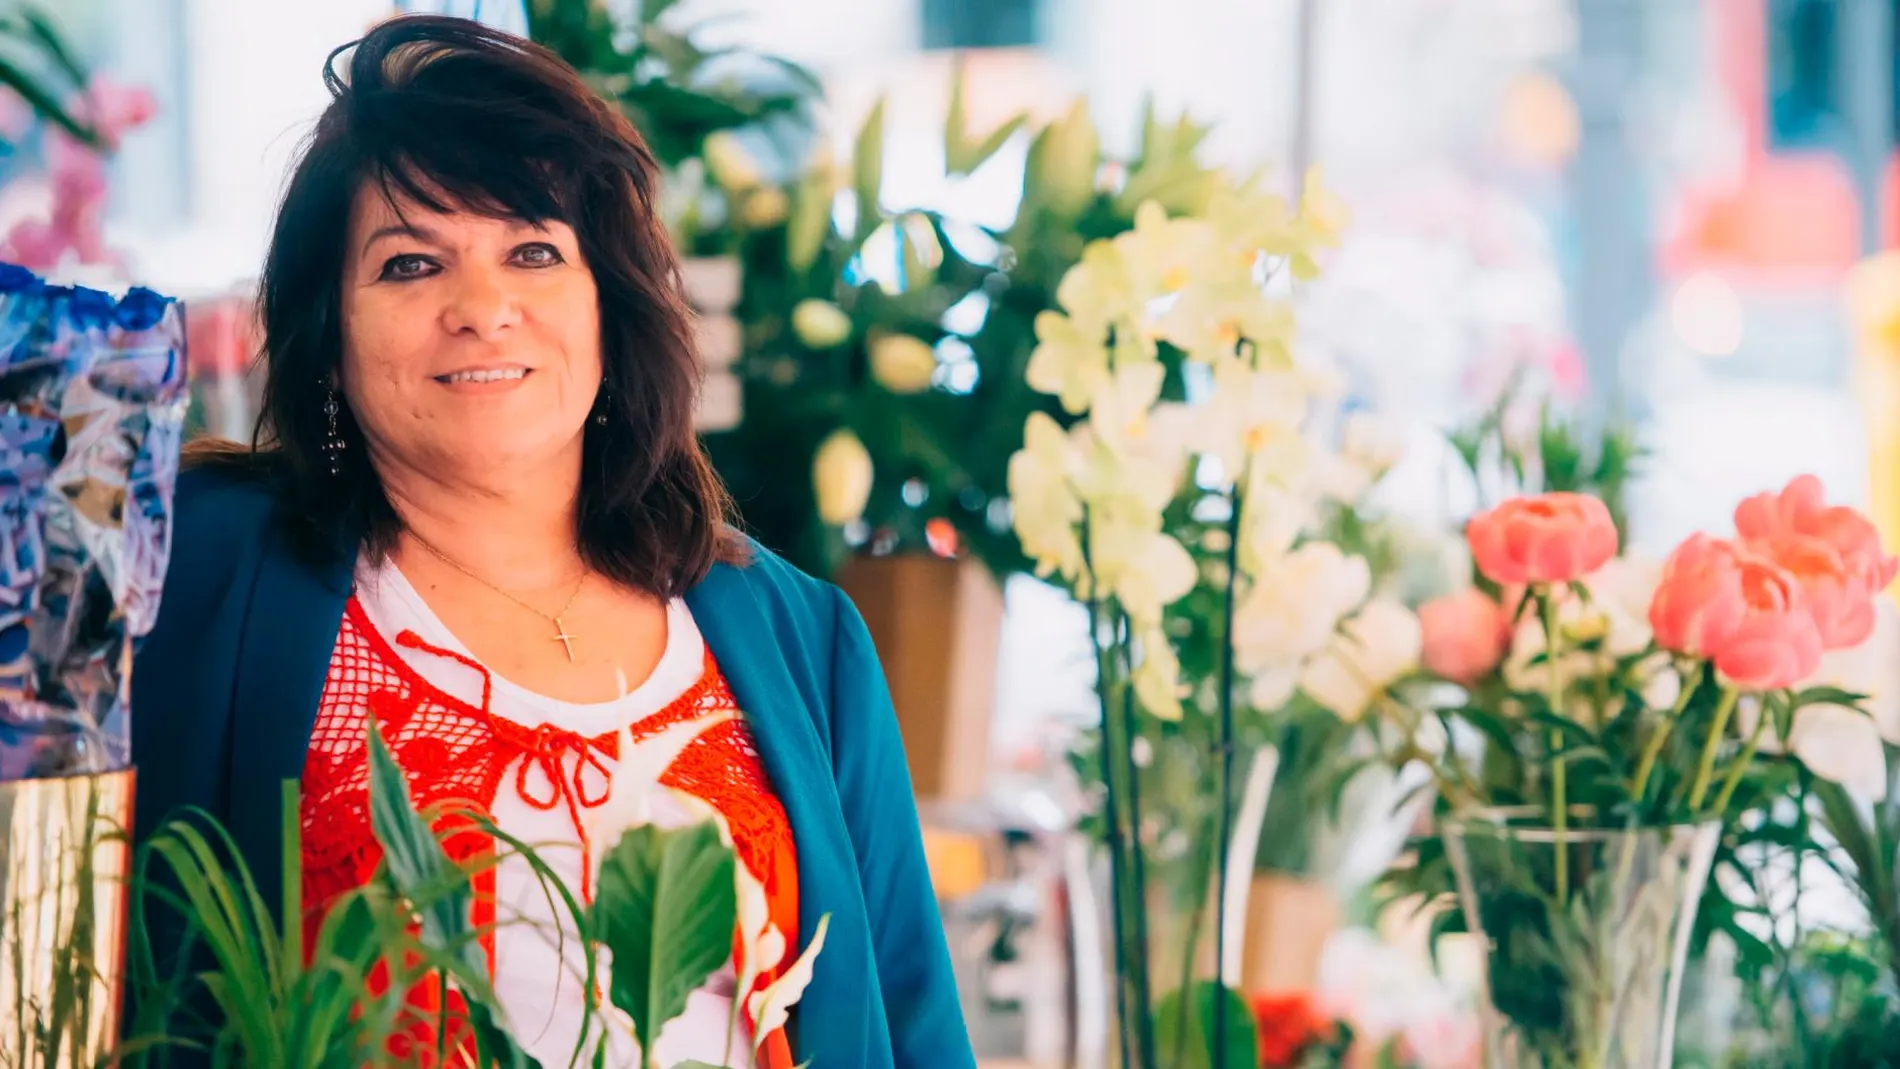 Lola Soriano, florista y escritora, es la tercera generación que pasa por esta floristería. No duda que el legado de este puesto continuará con sus hijos